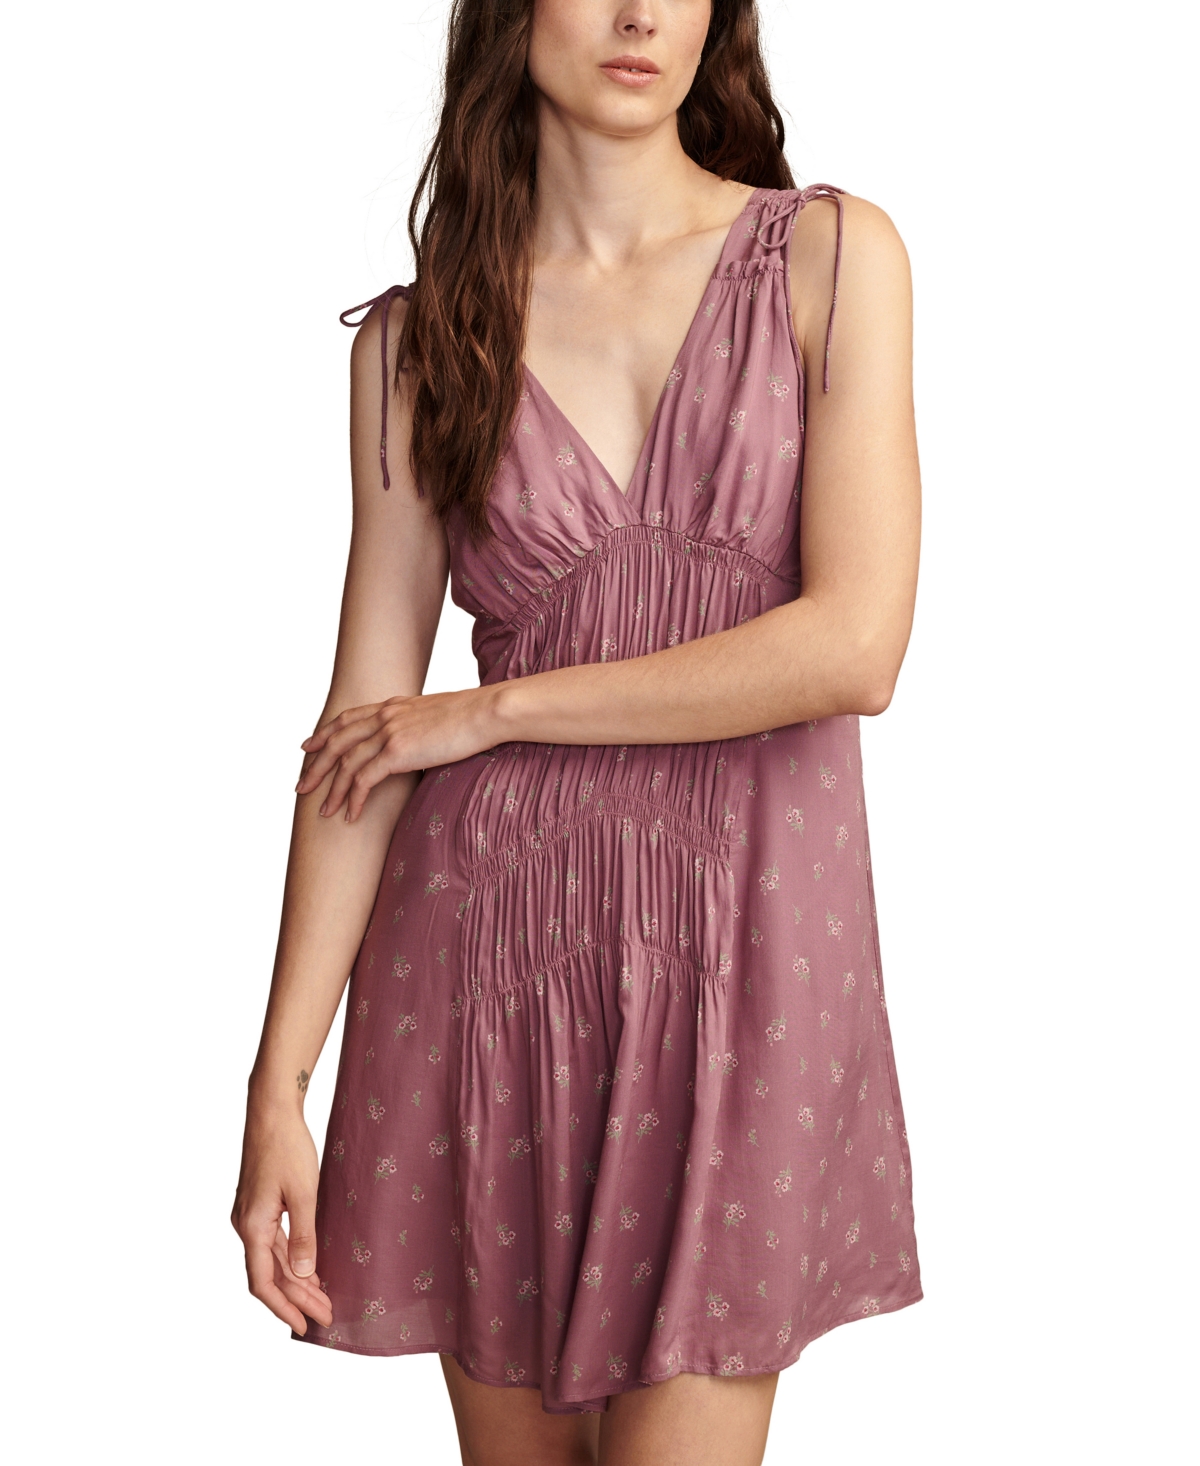 Women's V-Neck Sleeveless Smocked Dress - Berry Multi